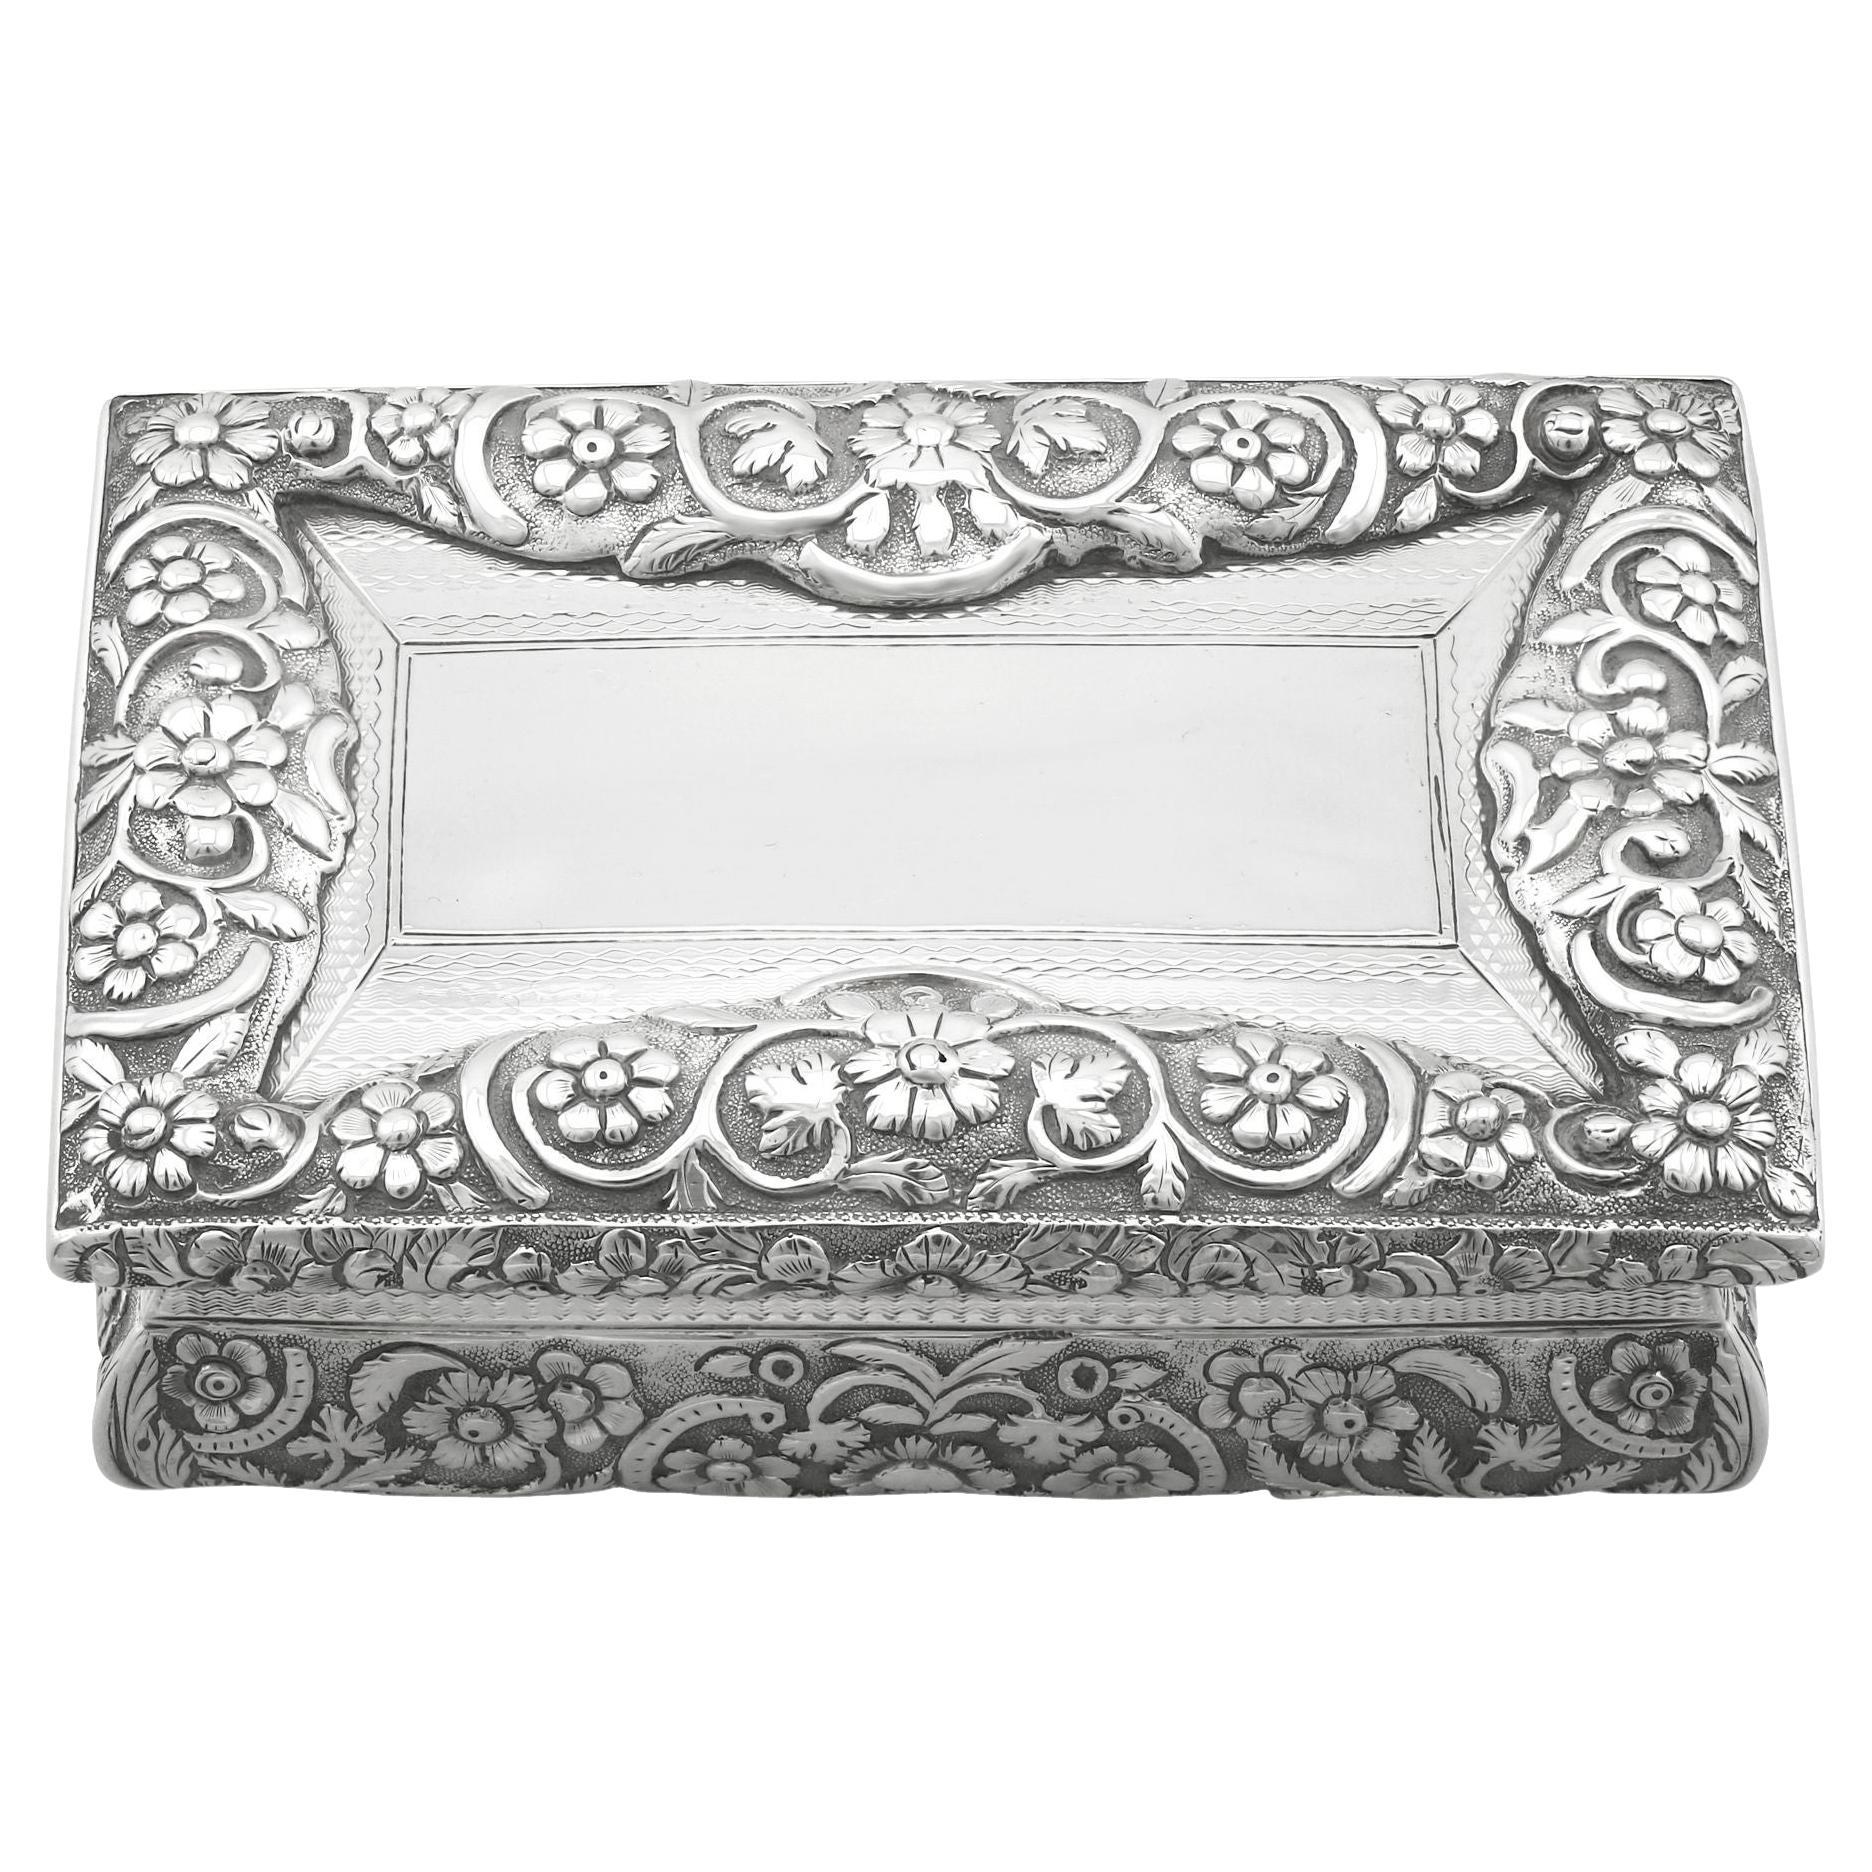 Joseph Willmore Antique 1836 Sterling Silver Table Snuff Box